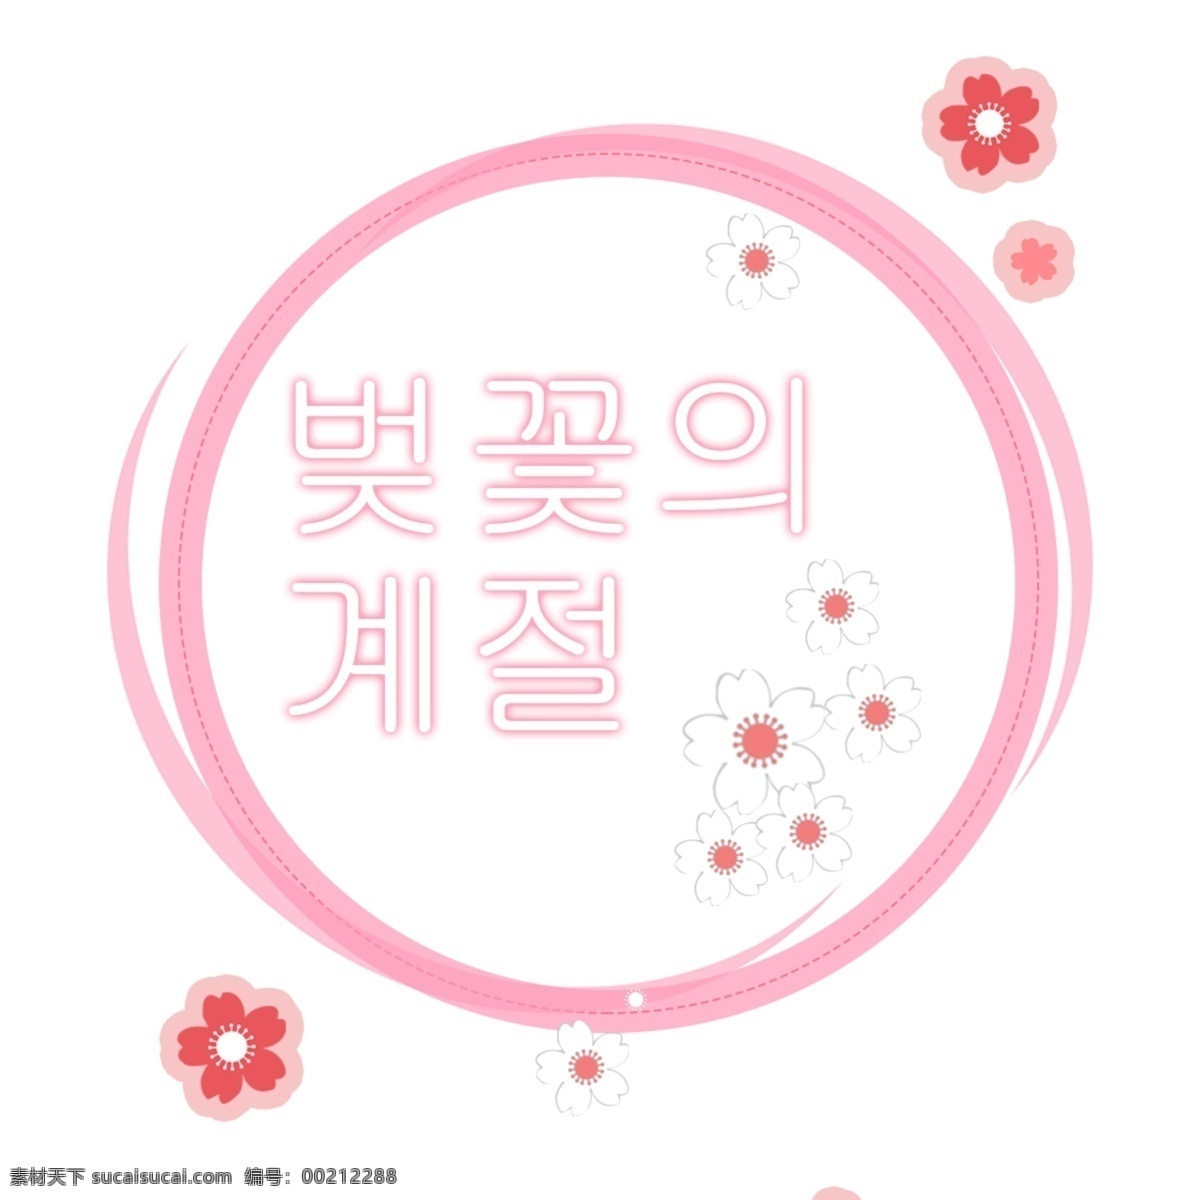 樱花季节 樱花 季节 花的 韩国人 韩国字体 可爱 字形 粉